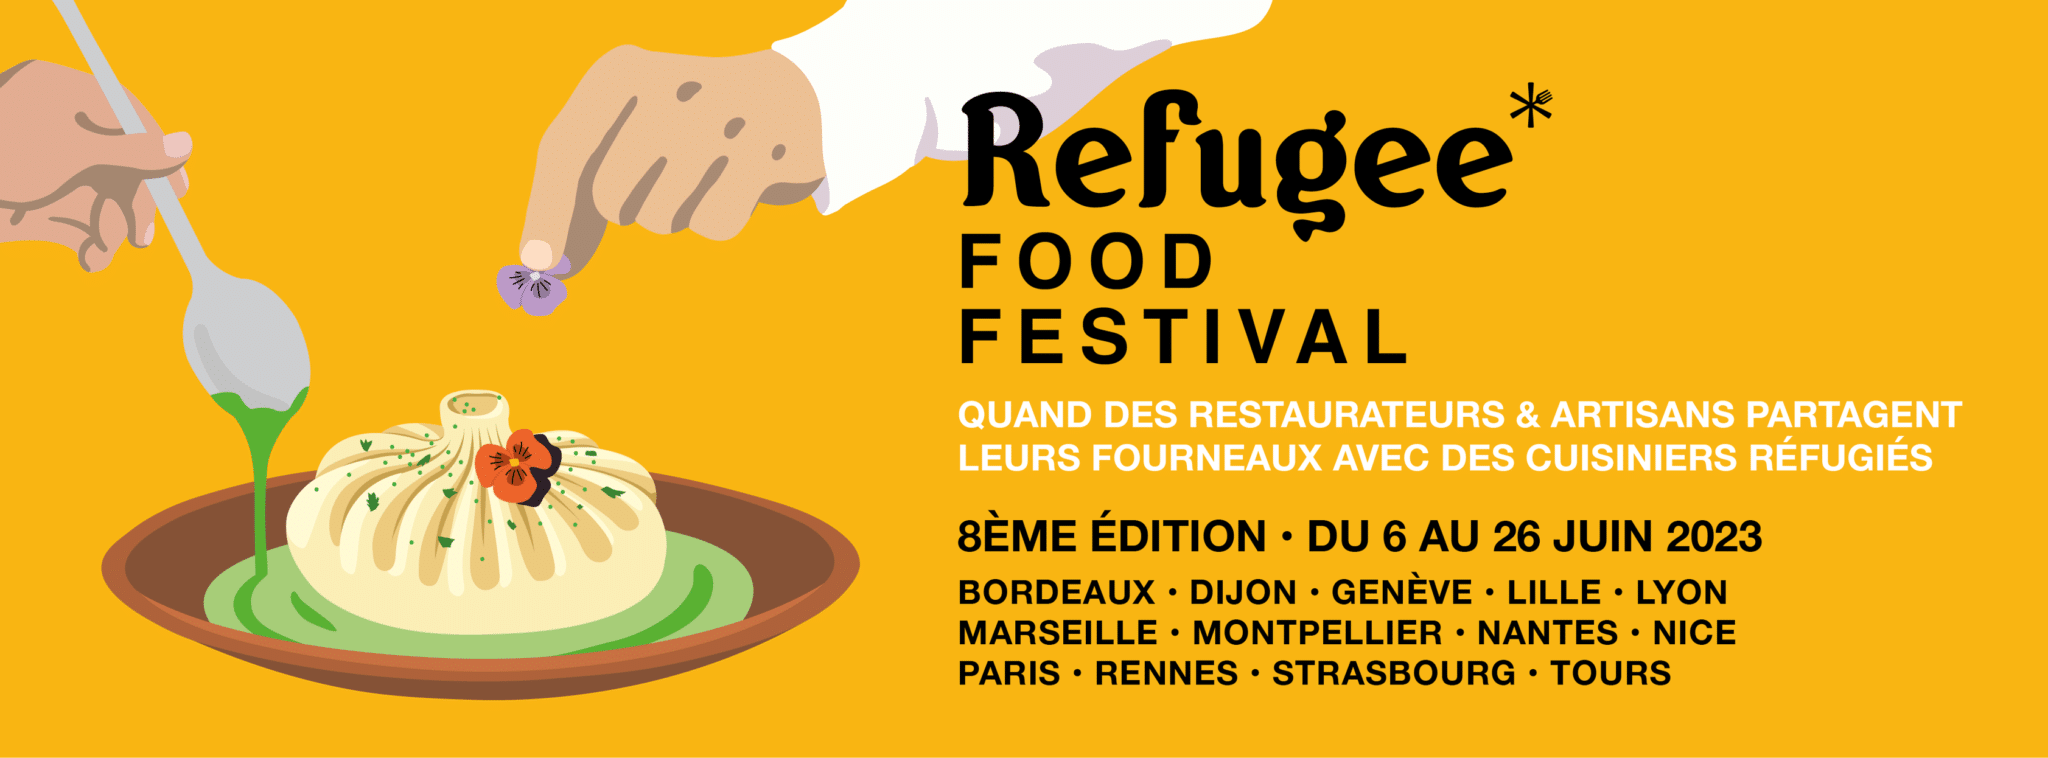 Affiche de la 8ème édition du Refugee Food Festival